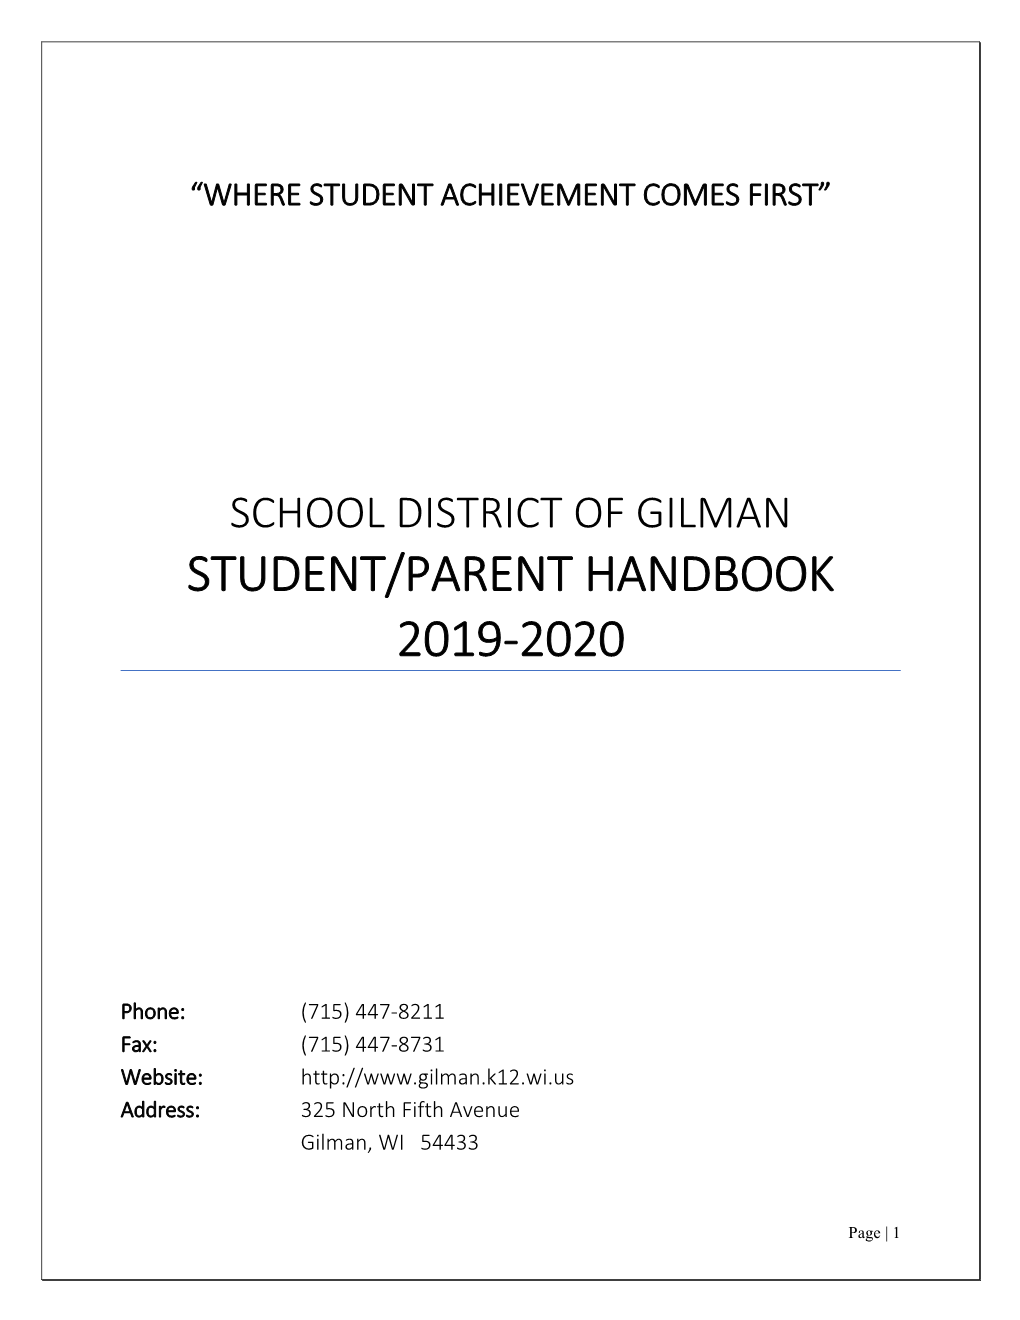 School District of Gilman Student/Parent Handbook 2019-2020